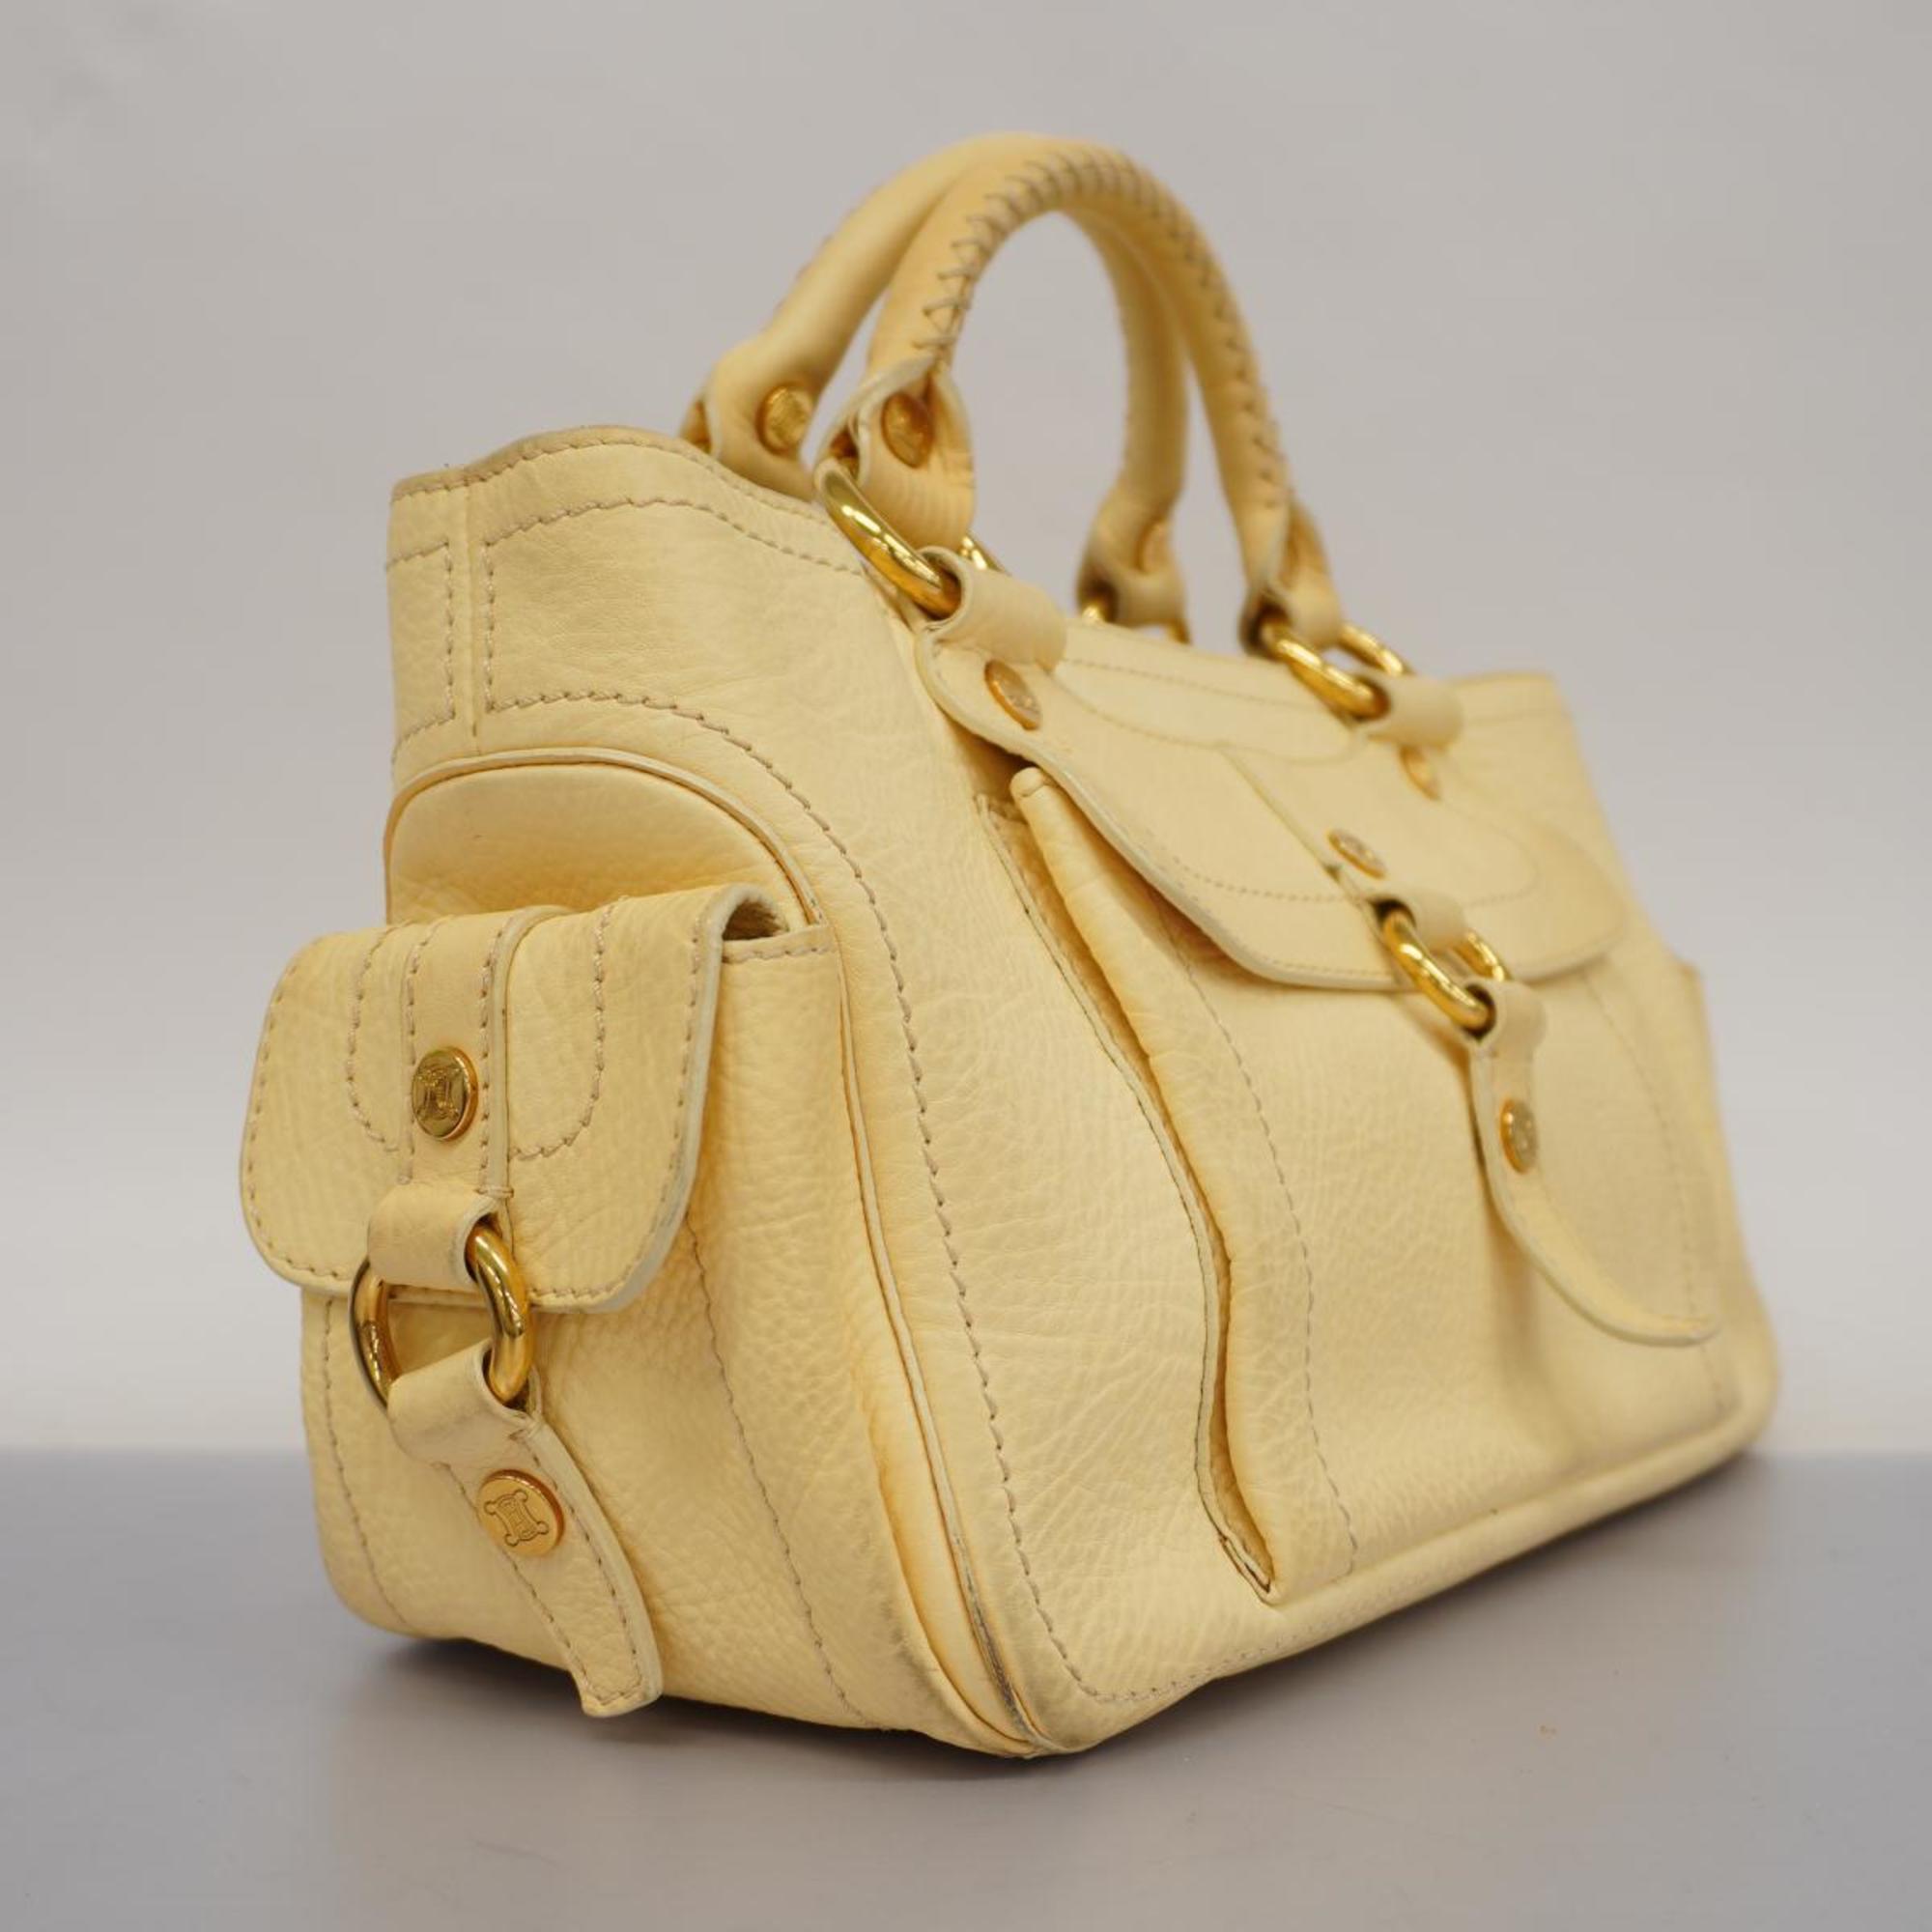 Celine handbag boogie leather cream yellow ladies